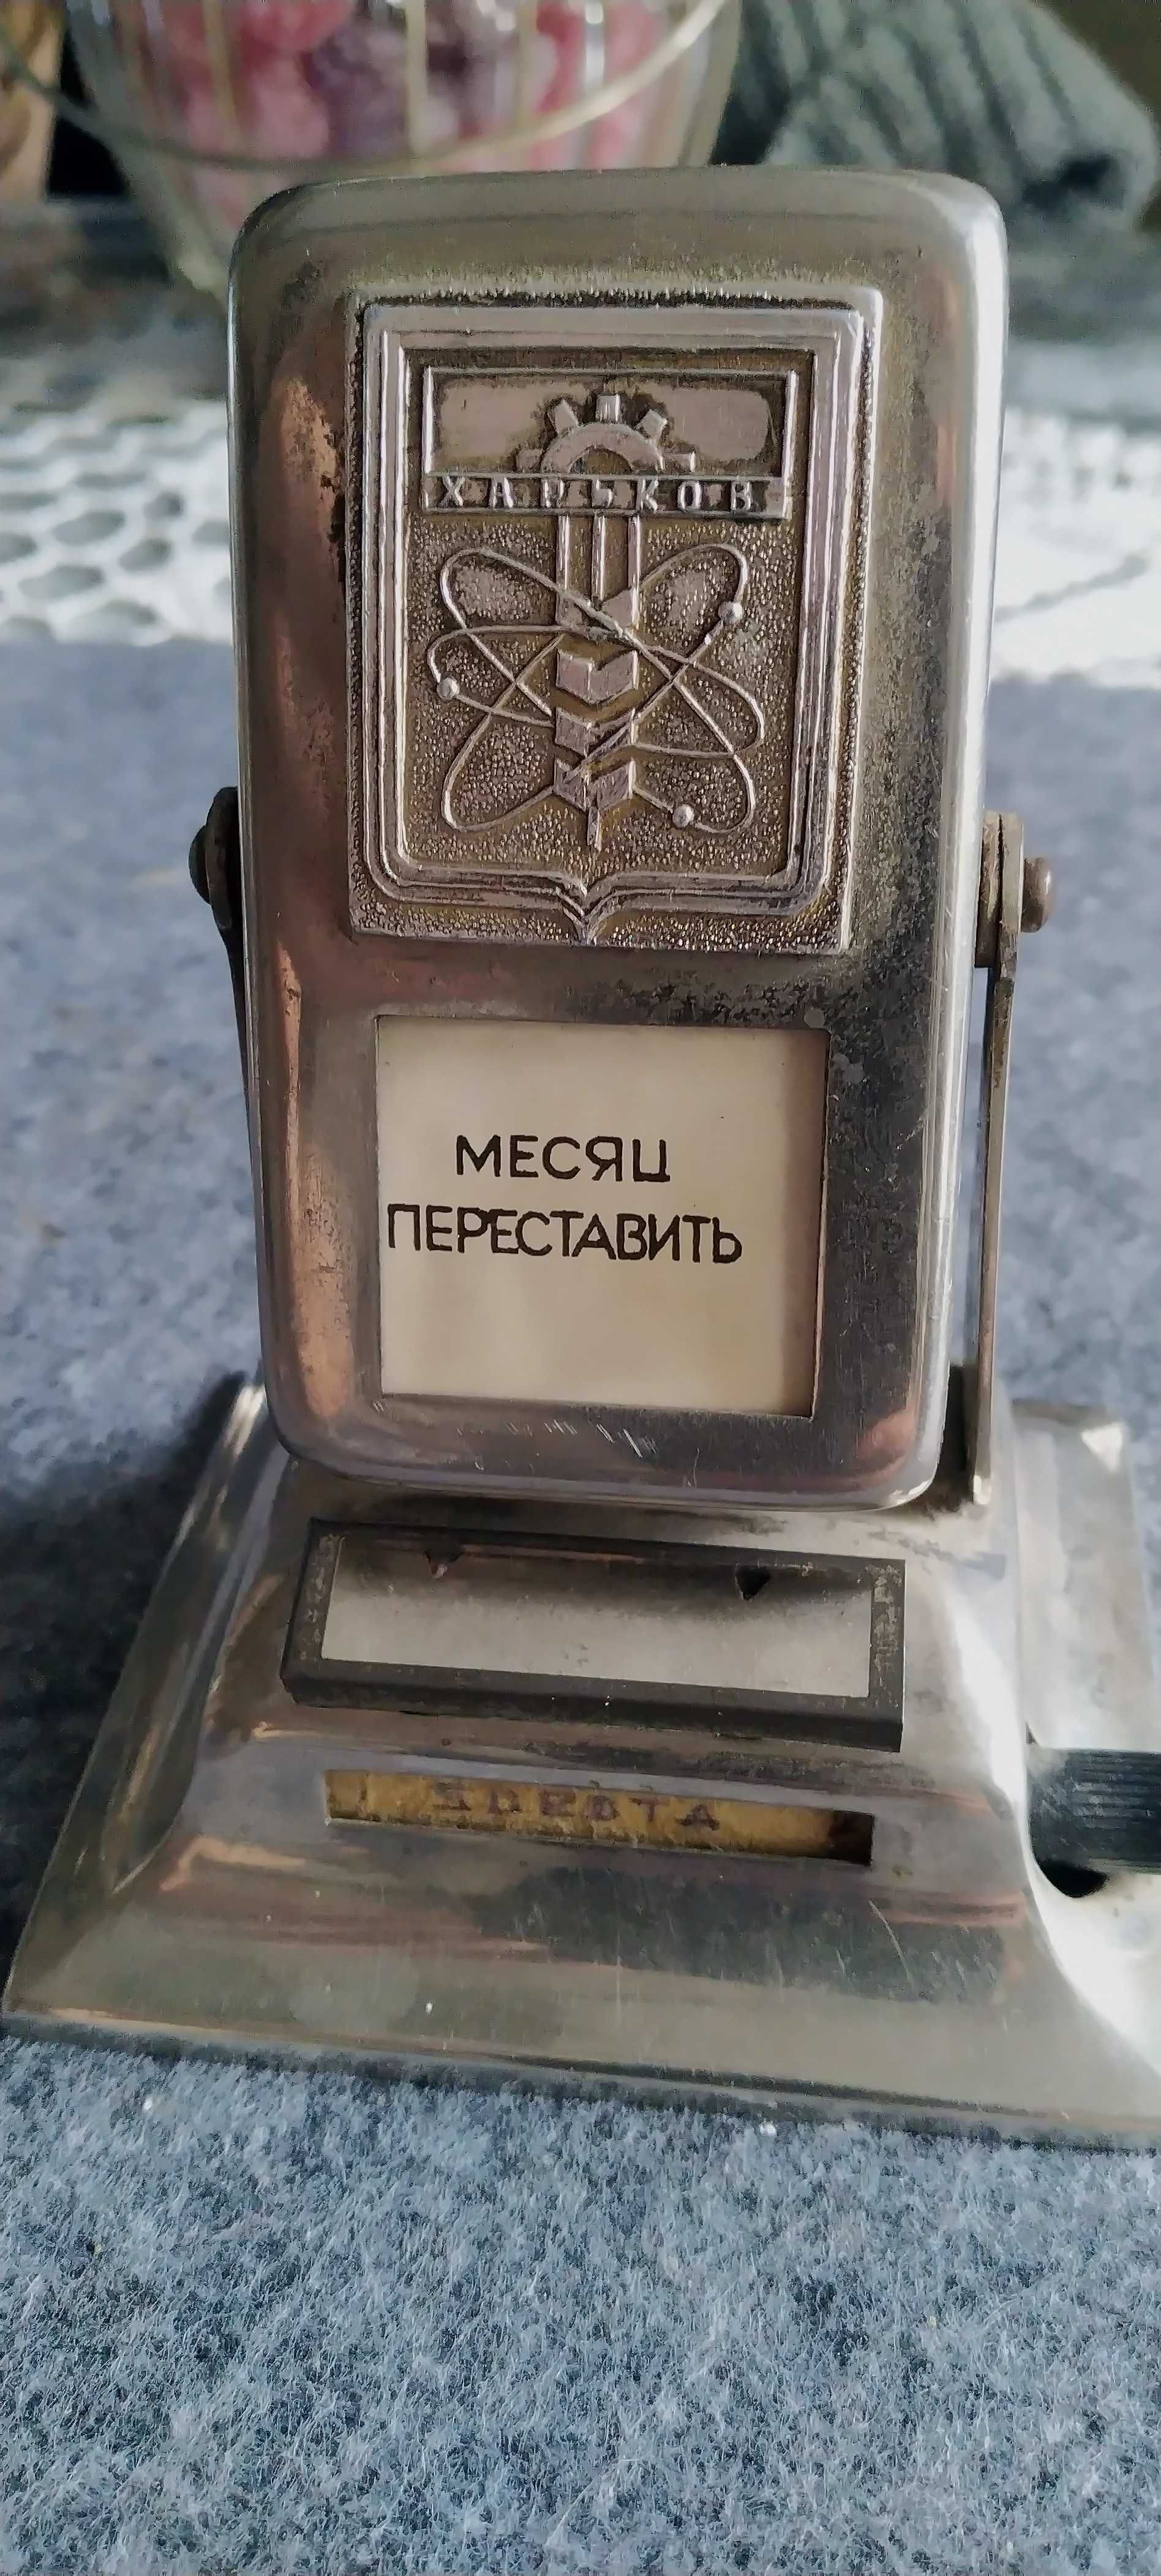 Stary wieczny kalendarz z okresu PRL-u produkcji ZSRR